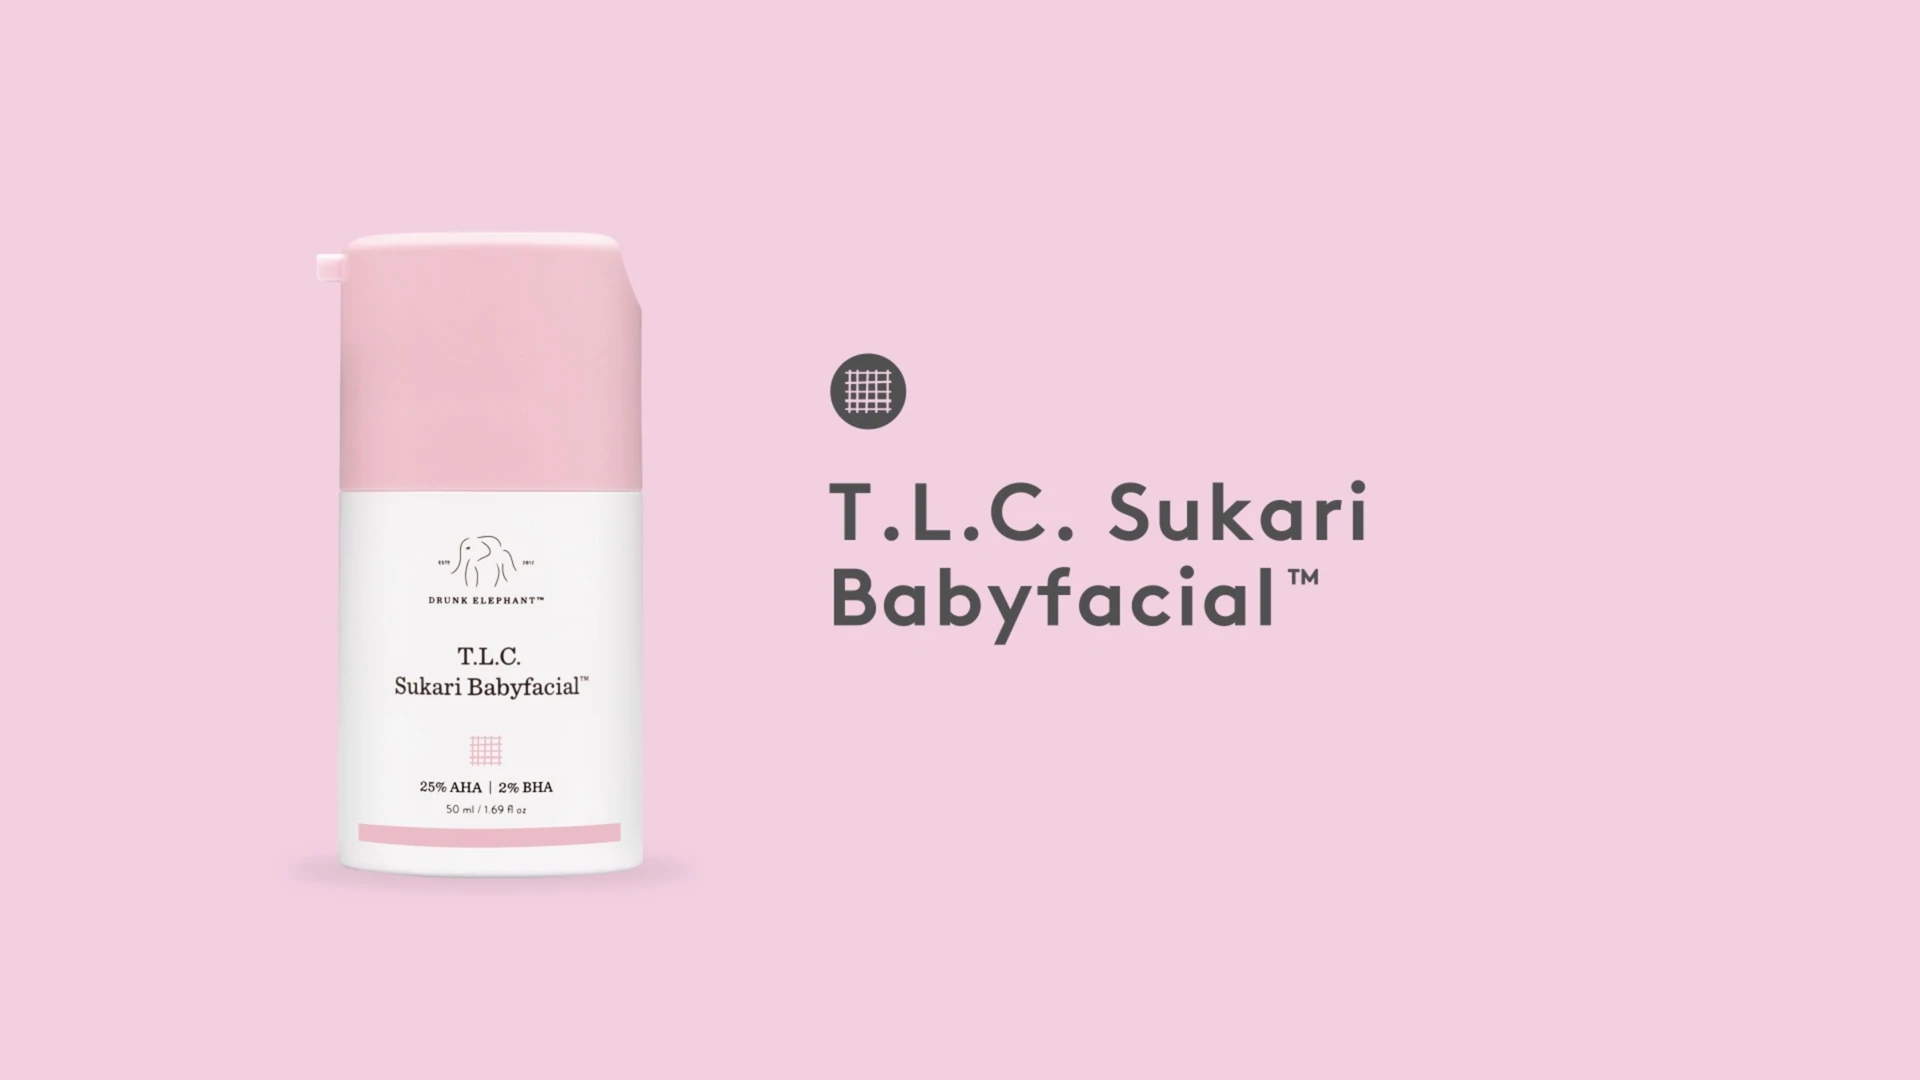 Video über die Vorteile der TLC Sukari Babyfacial Maske